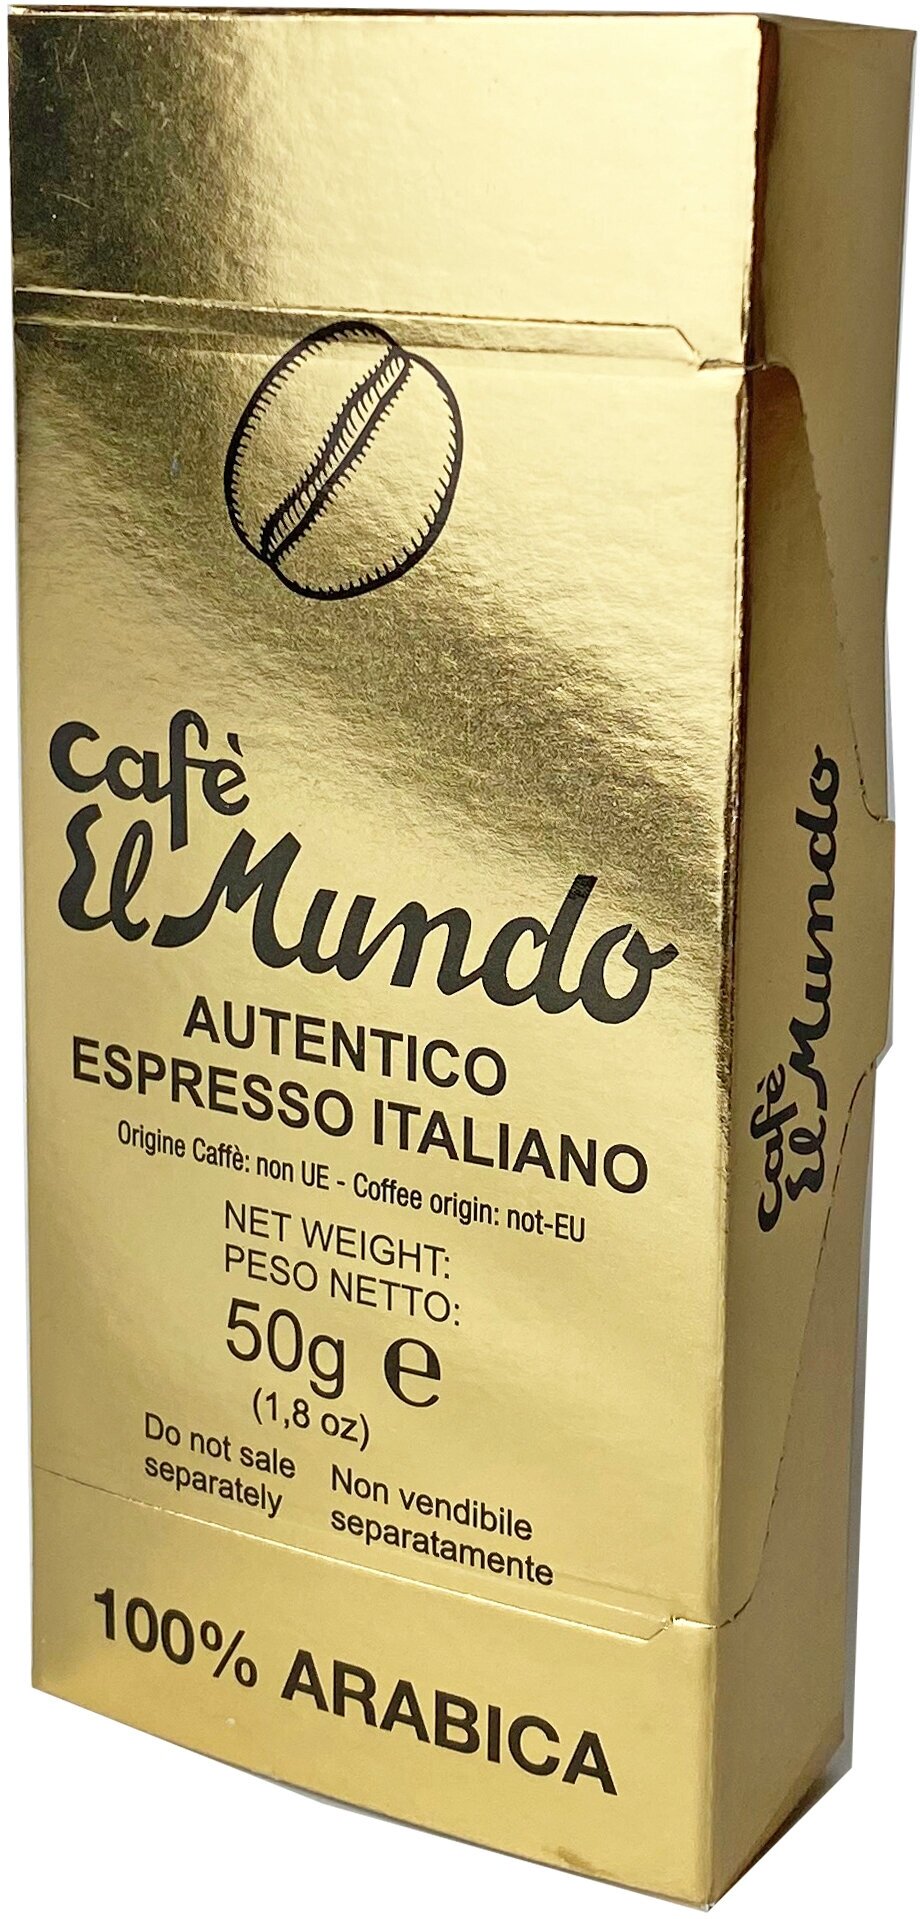 Кофе в капсулах ElMundo 100% Arabica, средней обжарки, 10 штук, система Nespresso